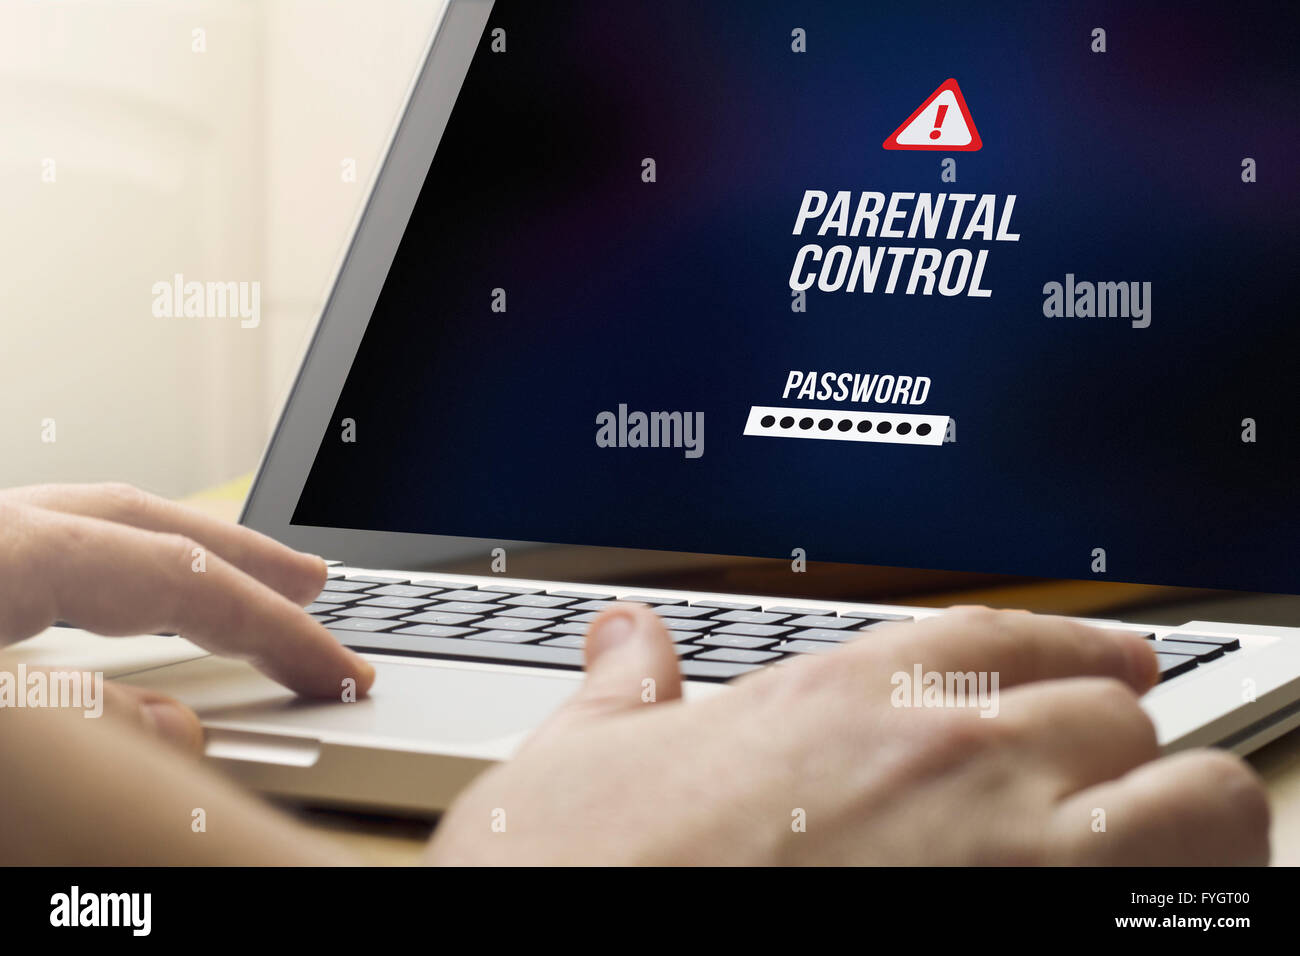 Concept de protection de l'enfance de la technologie : l'homme à l'aide d'un ordinateur portable avec le contrôle parental sur l'écran. Écran graphique sont constitués. Banque D'Images